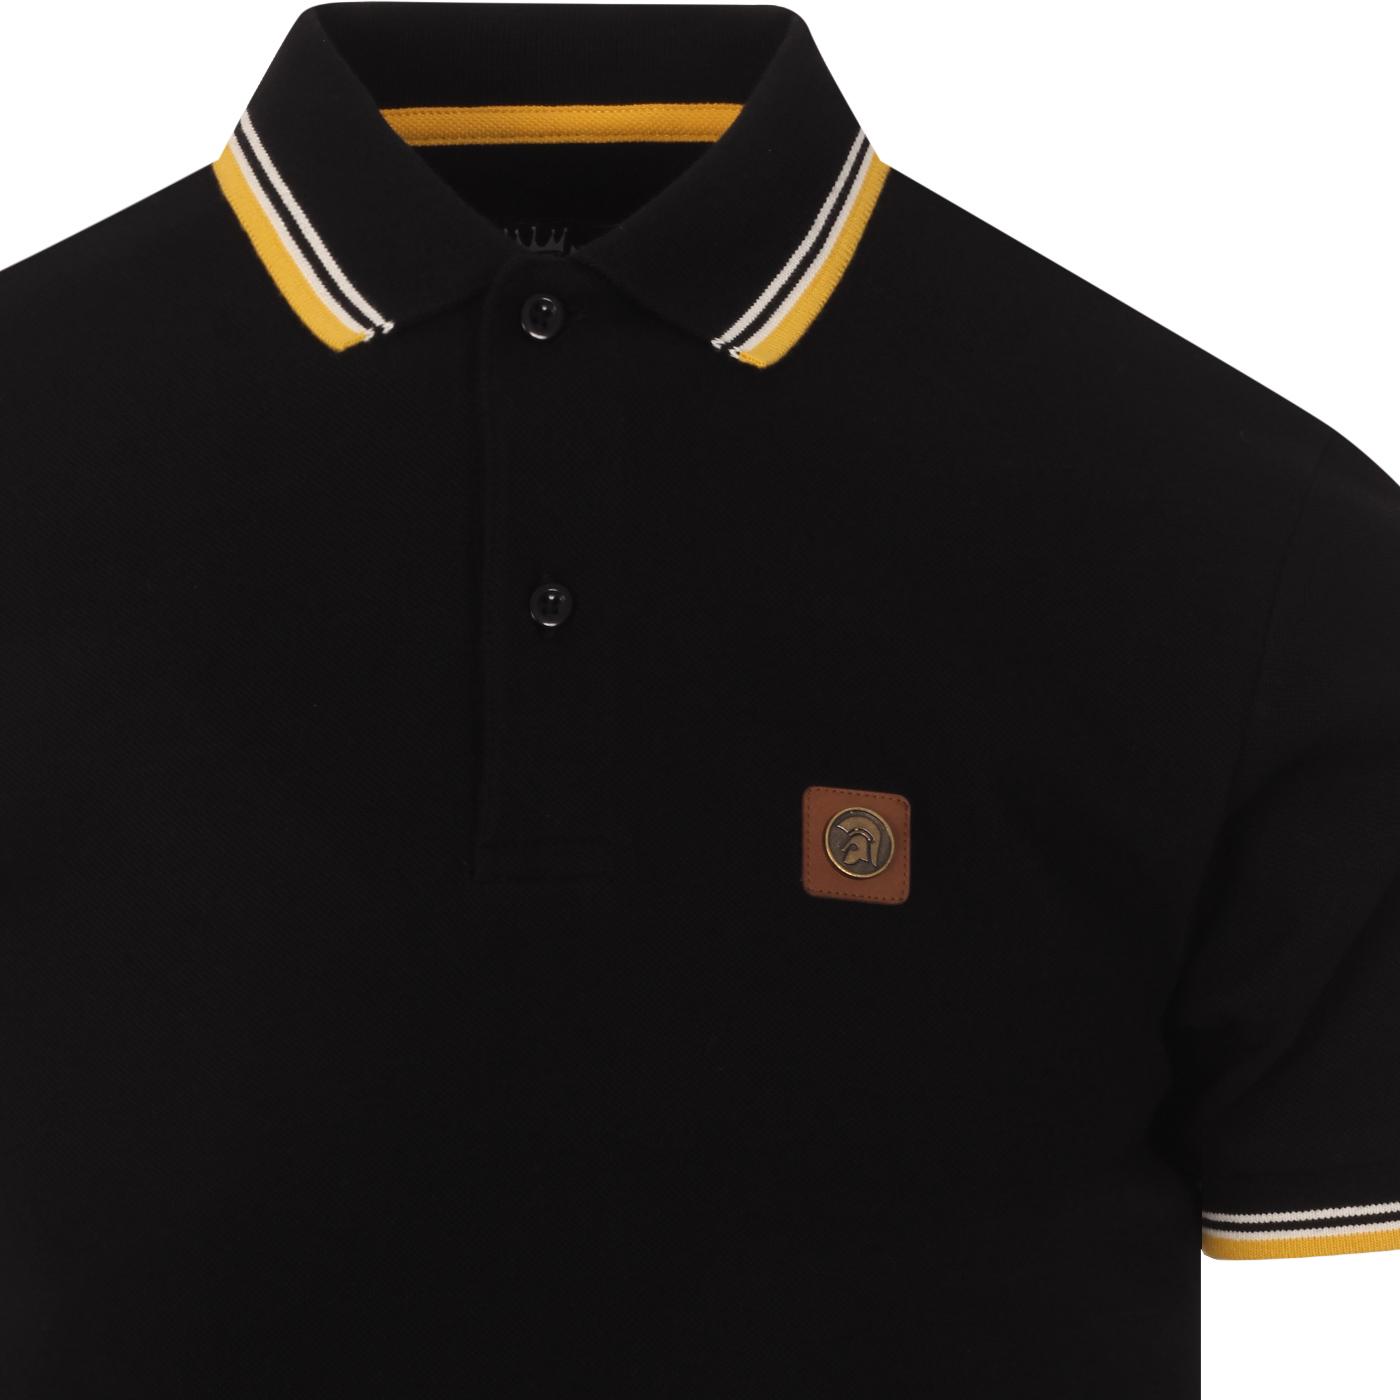 Trojan Records Black Badged Classic Retro Polo Shirt 